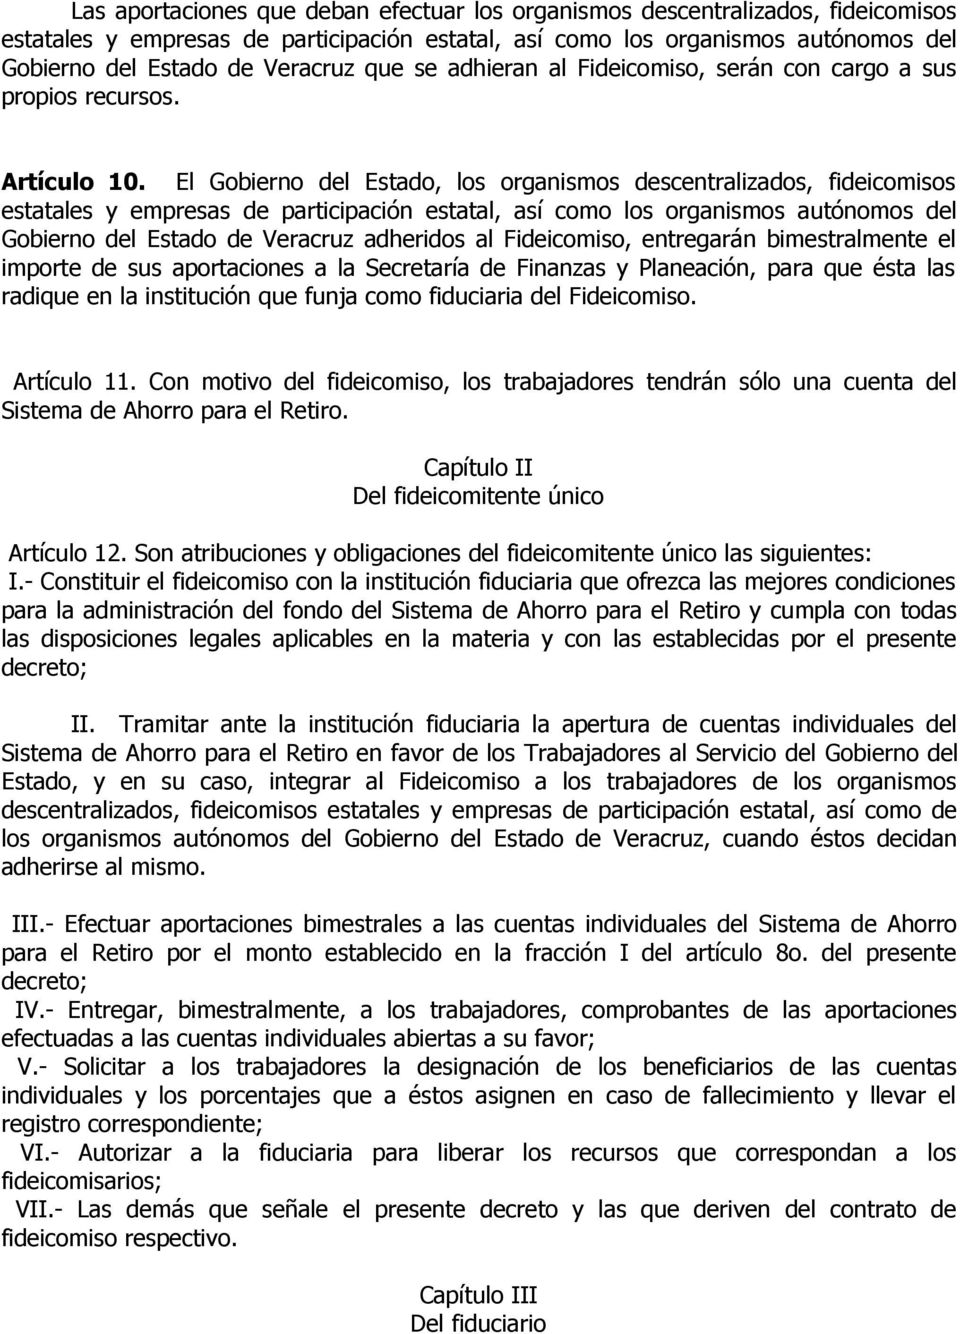 El Gobierno del Estado, los organismos descentralizados, fideicomisos estatales y empresas de participación estatal, así como los organismos autónomos del Gobierno del Estado de Veracruz adheridos al